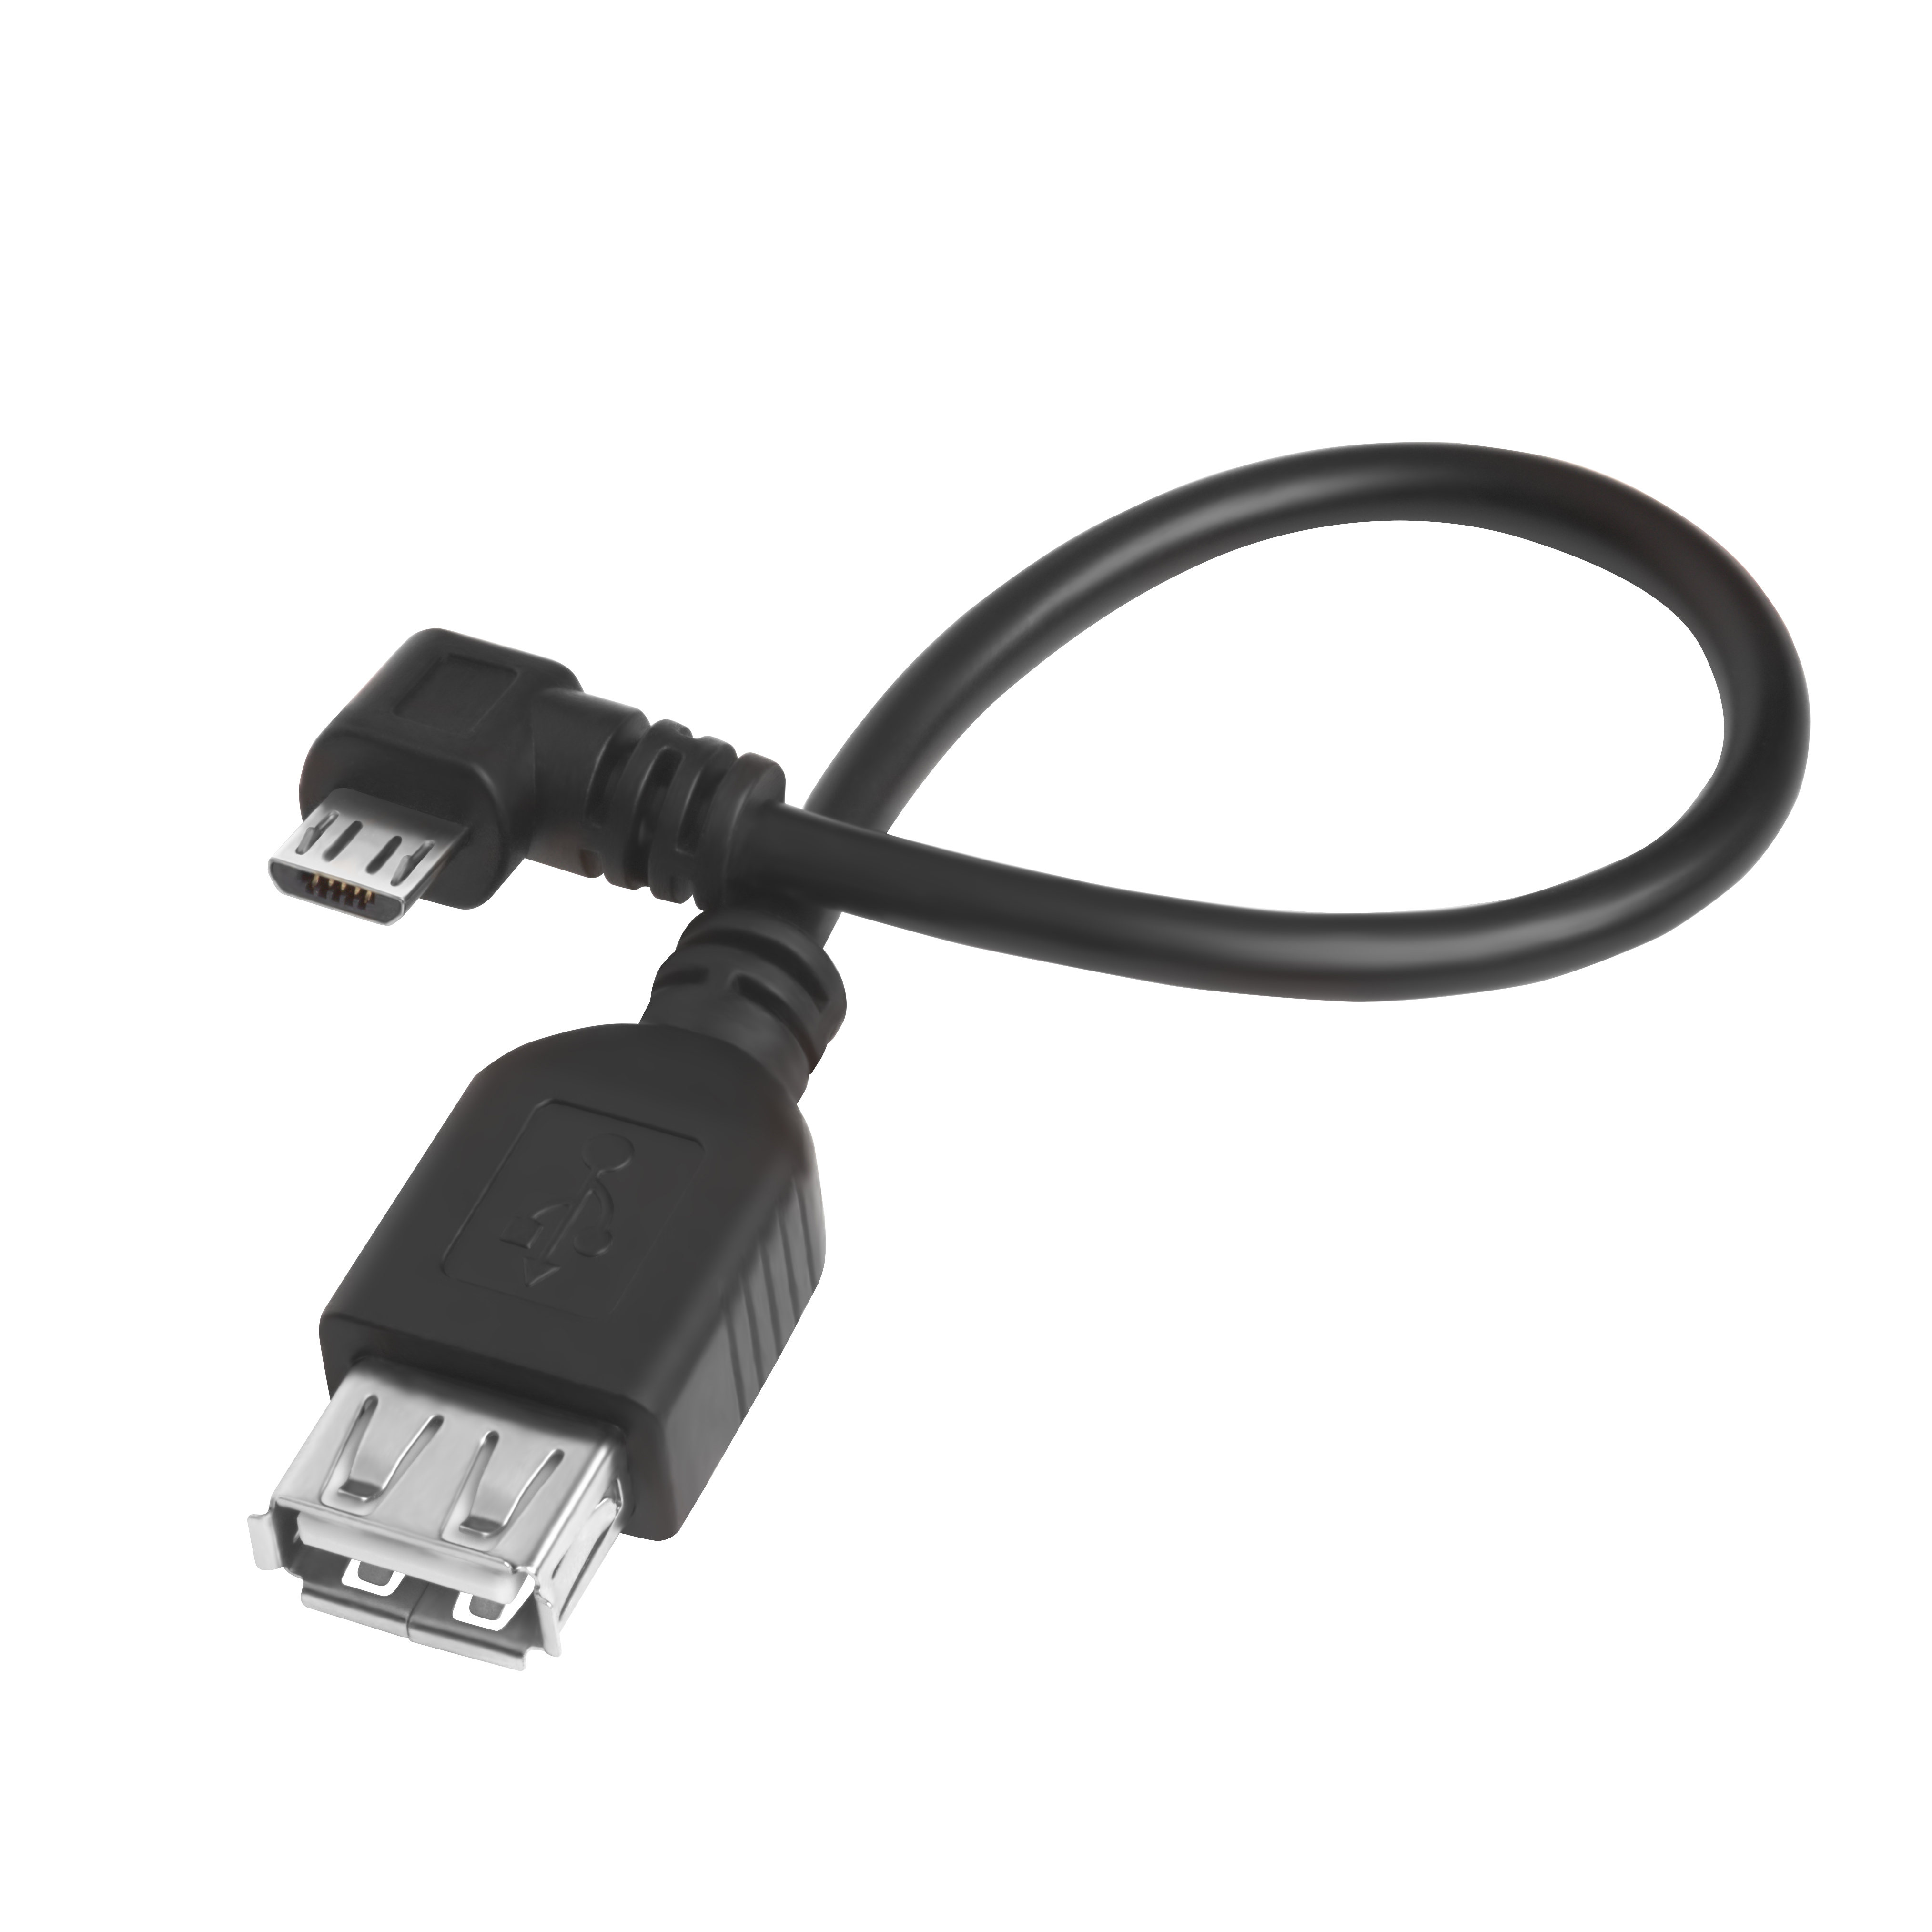 GCR Надежный адаптер переходник OTG 0.15m USB 2.0, microB 5pin угловой коннектор, черный, двойное экранирование, морозостойкий